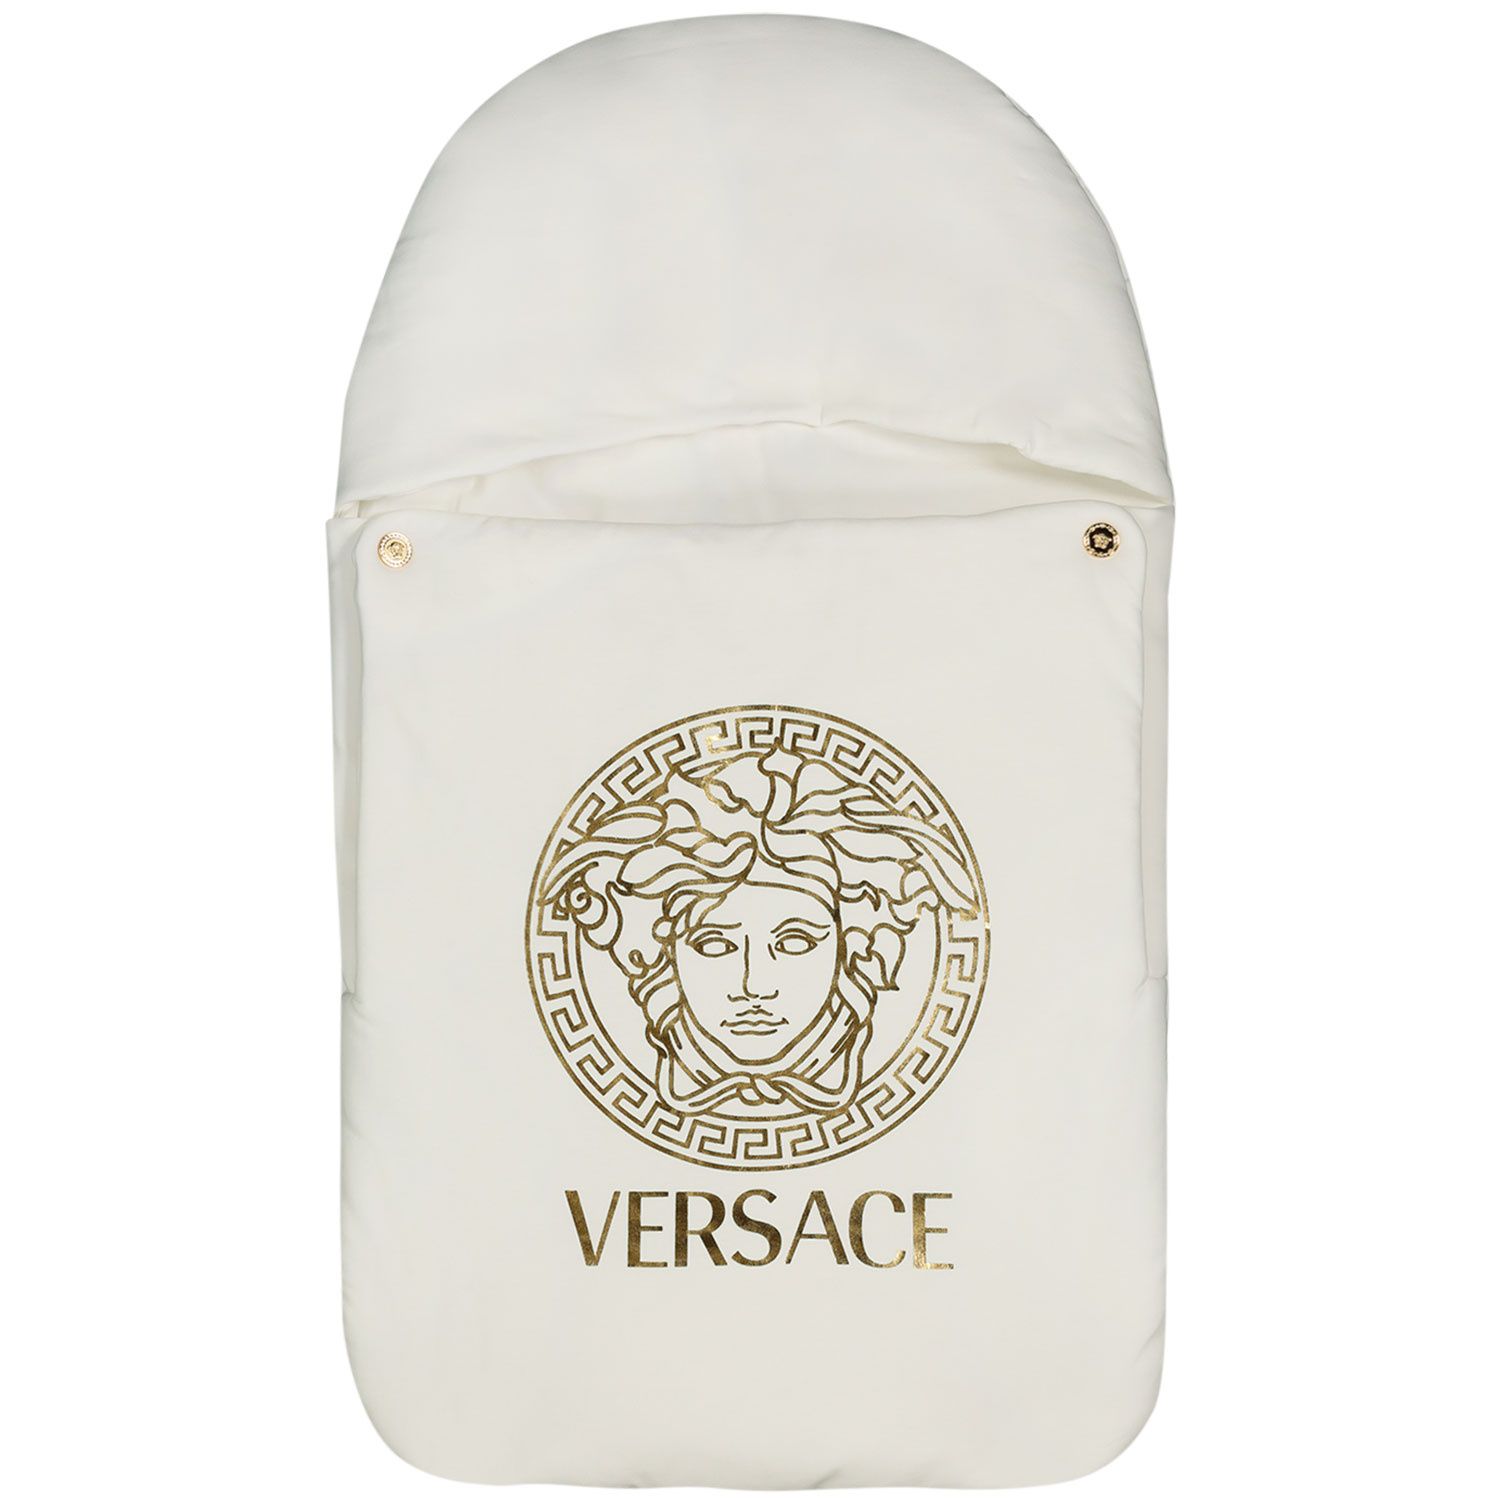 Afbeelding van Versace 1000299 babyaccessoire wit/goud